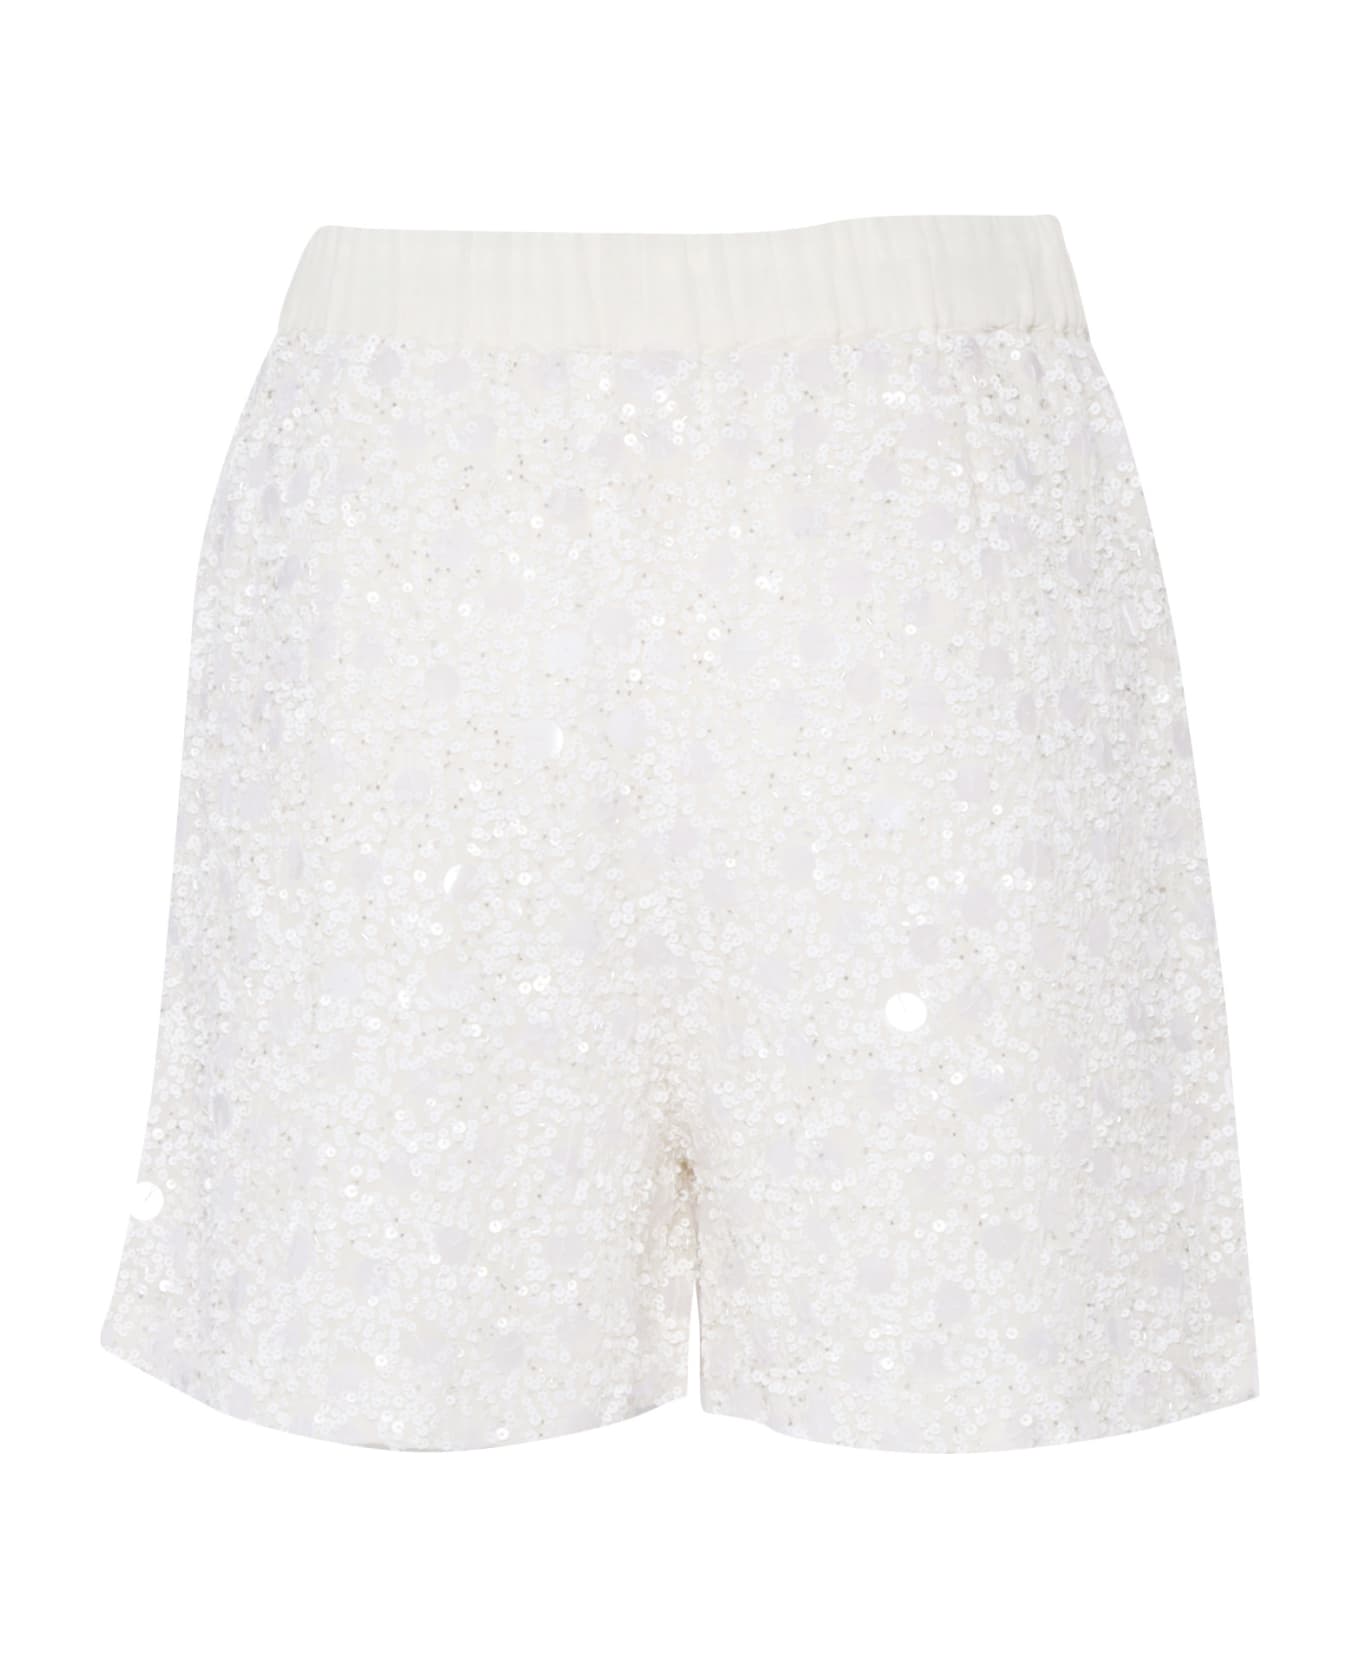 Parosh White Shorts Wtih Sequins - WHITE